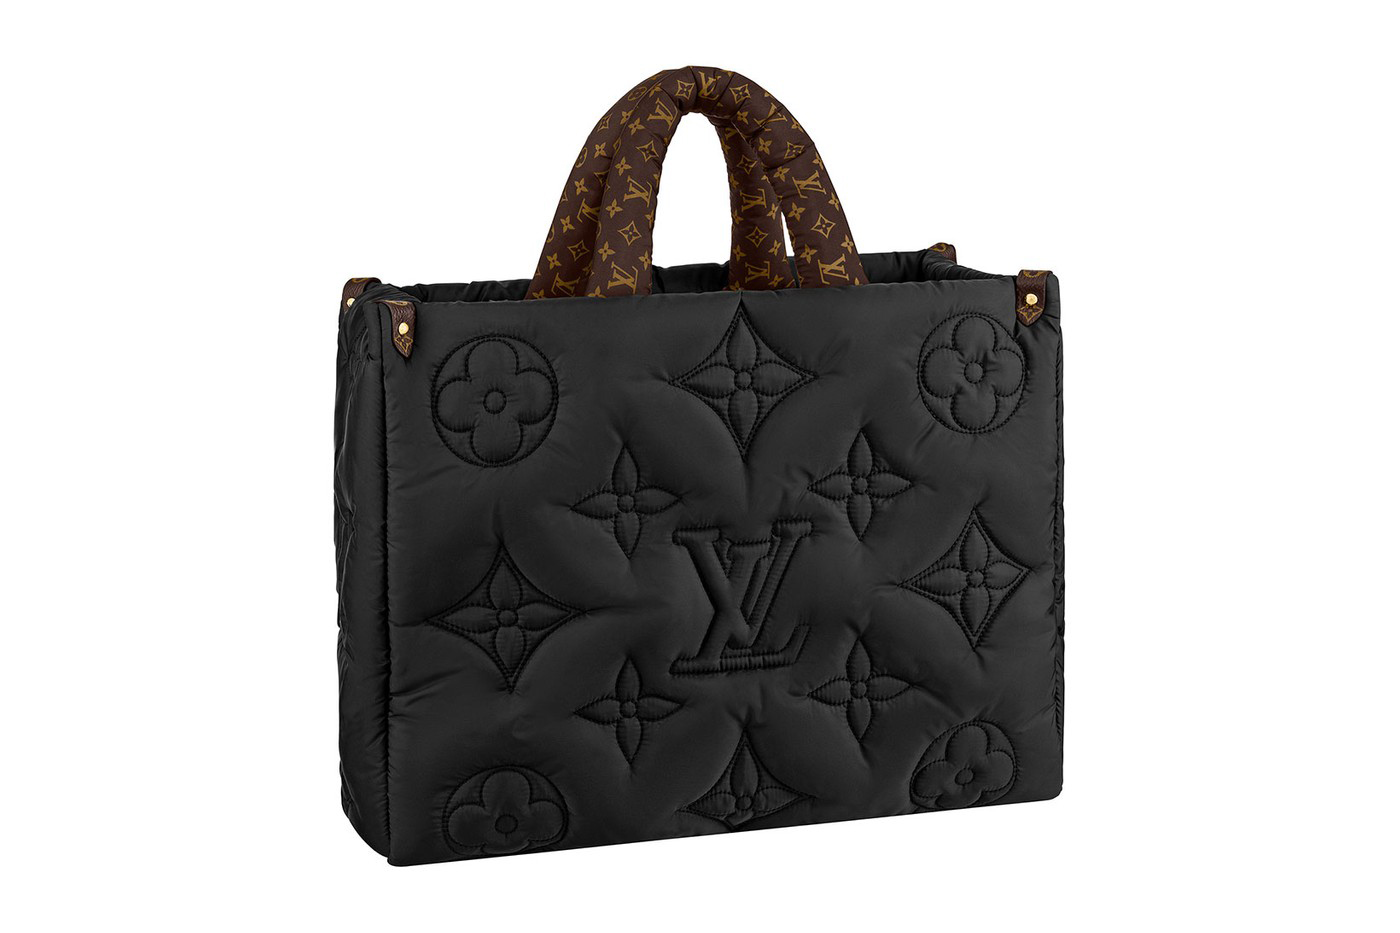 Ces sacs Louis Vuitton s'inspirent de sacs de congélation